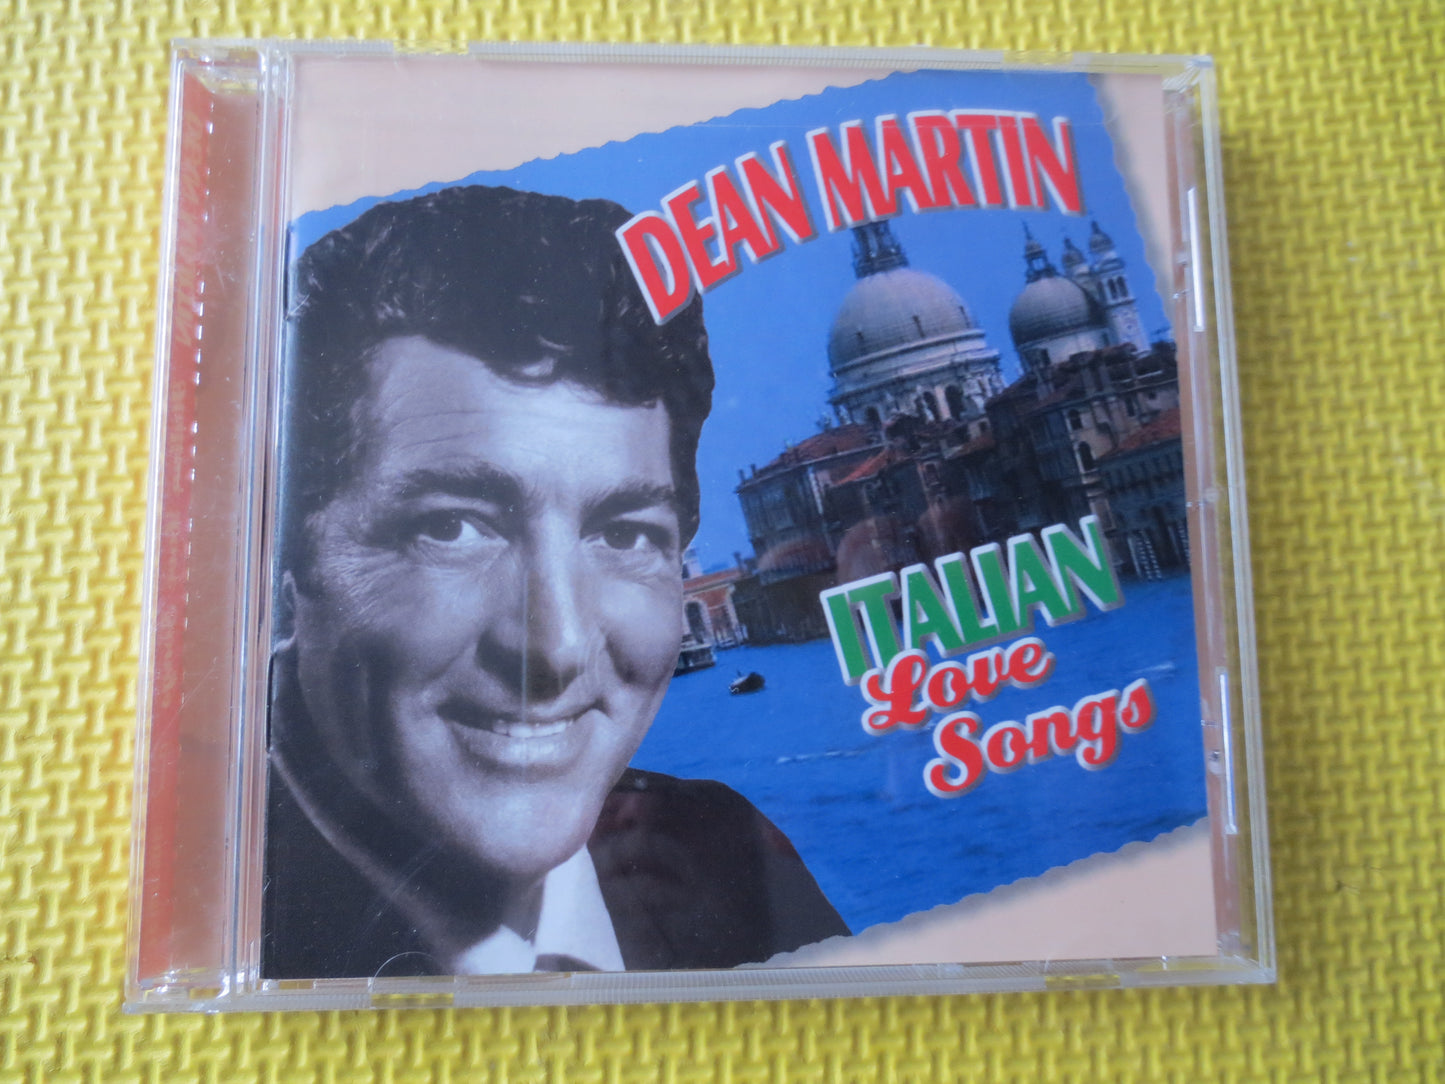 DEAN MARTIN, Italian LOVE Songs, Dean Martin Cd, Dean Martin Albums, Dean Martin Music, Dean Martin Songs, Cds, 1990 Compact Discs